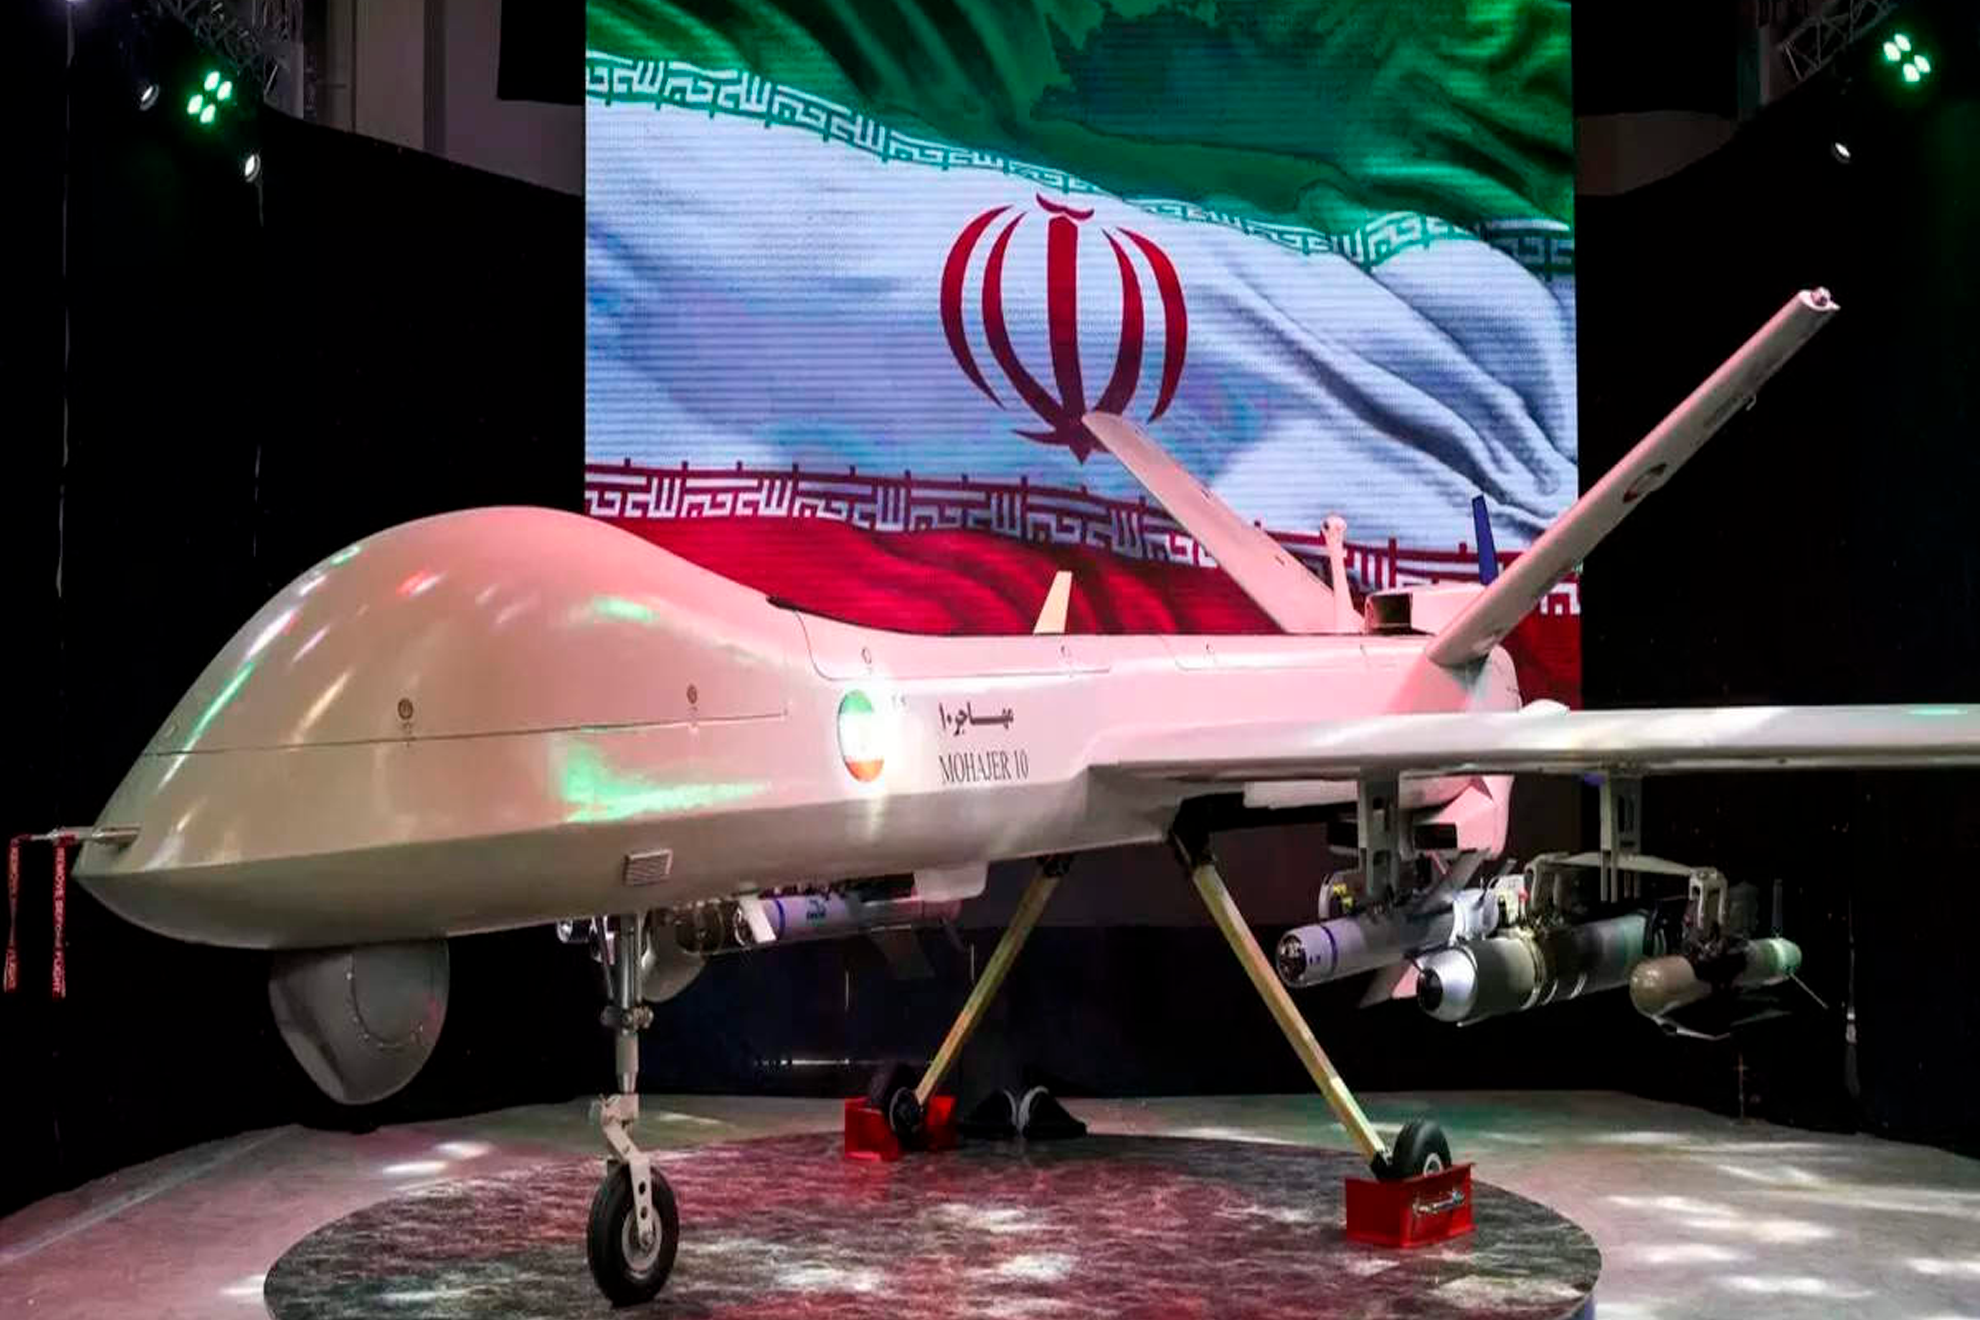 Irn lanza un ataque con drones hacia Israel